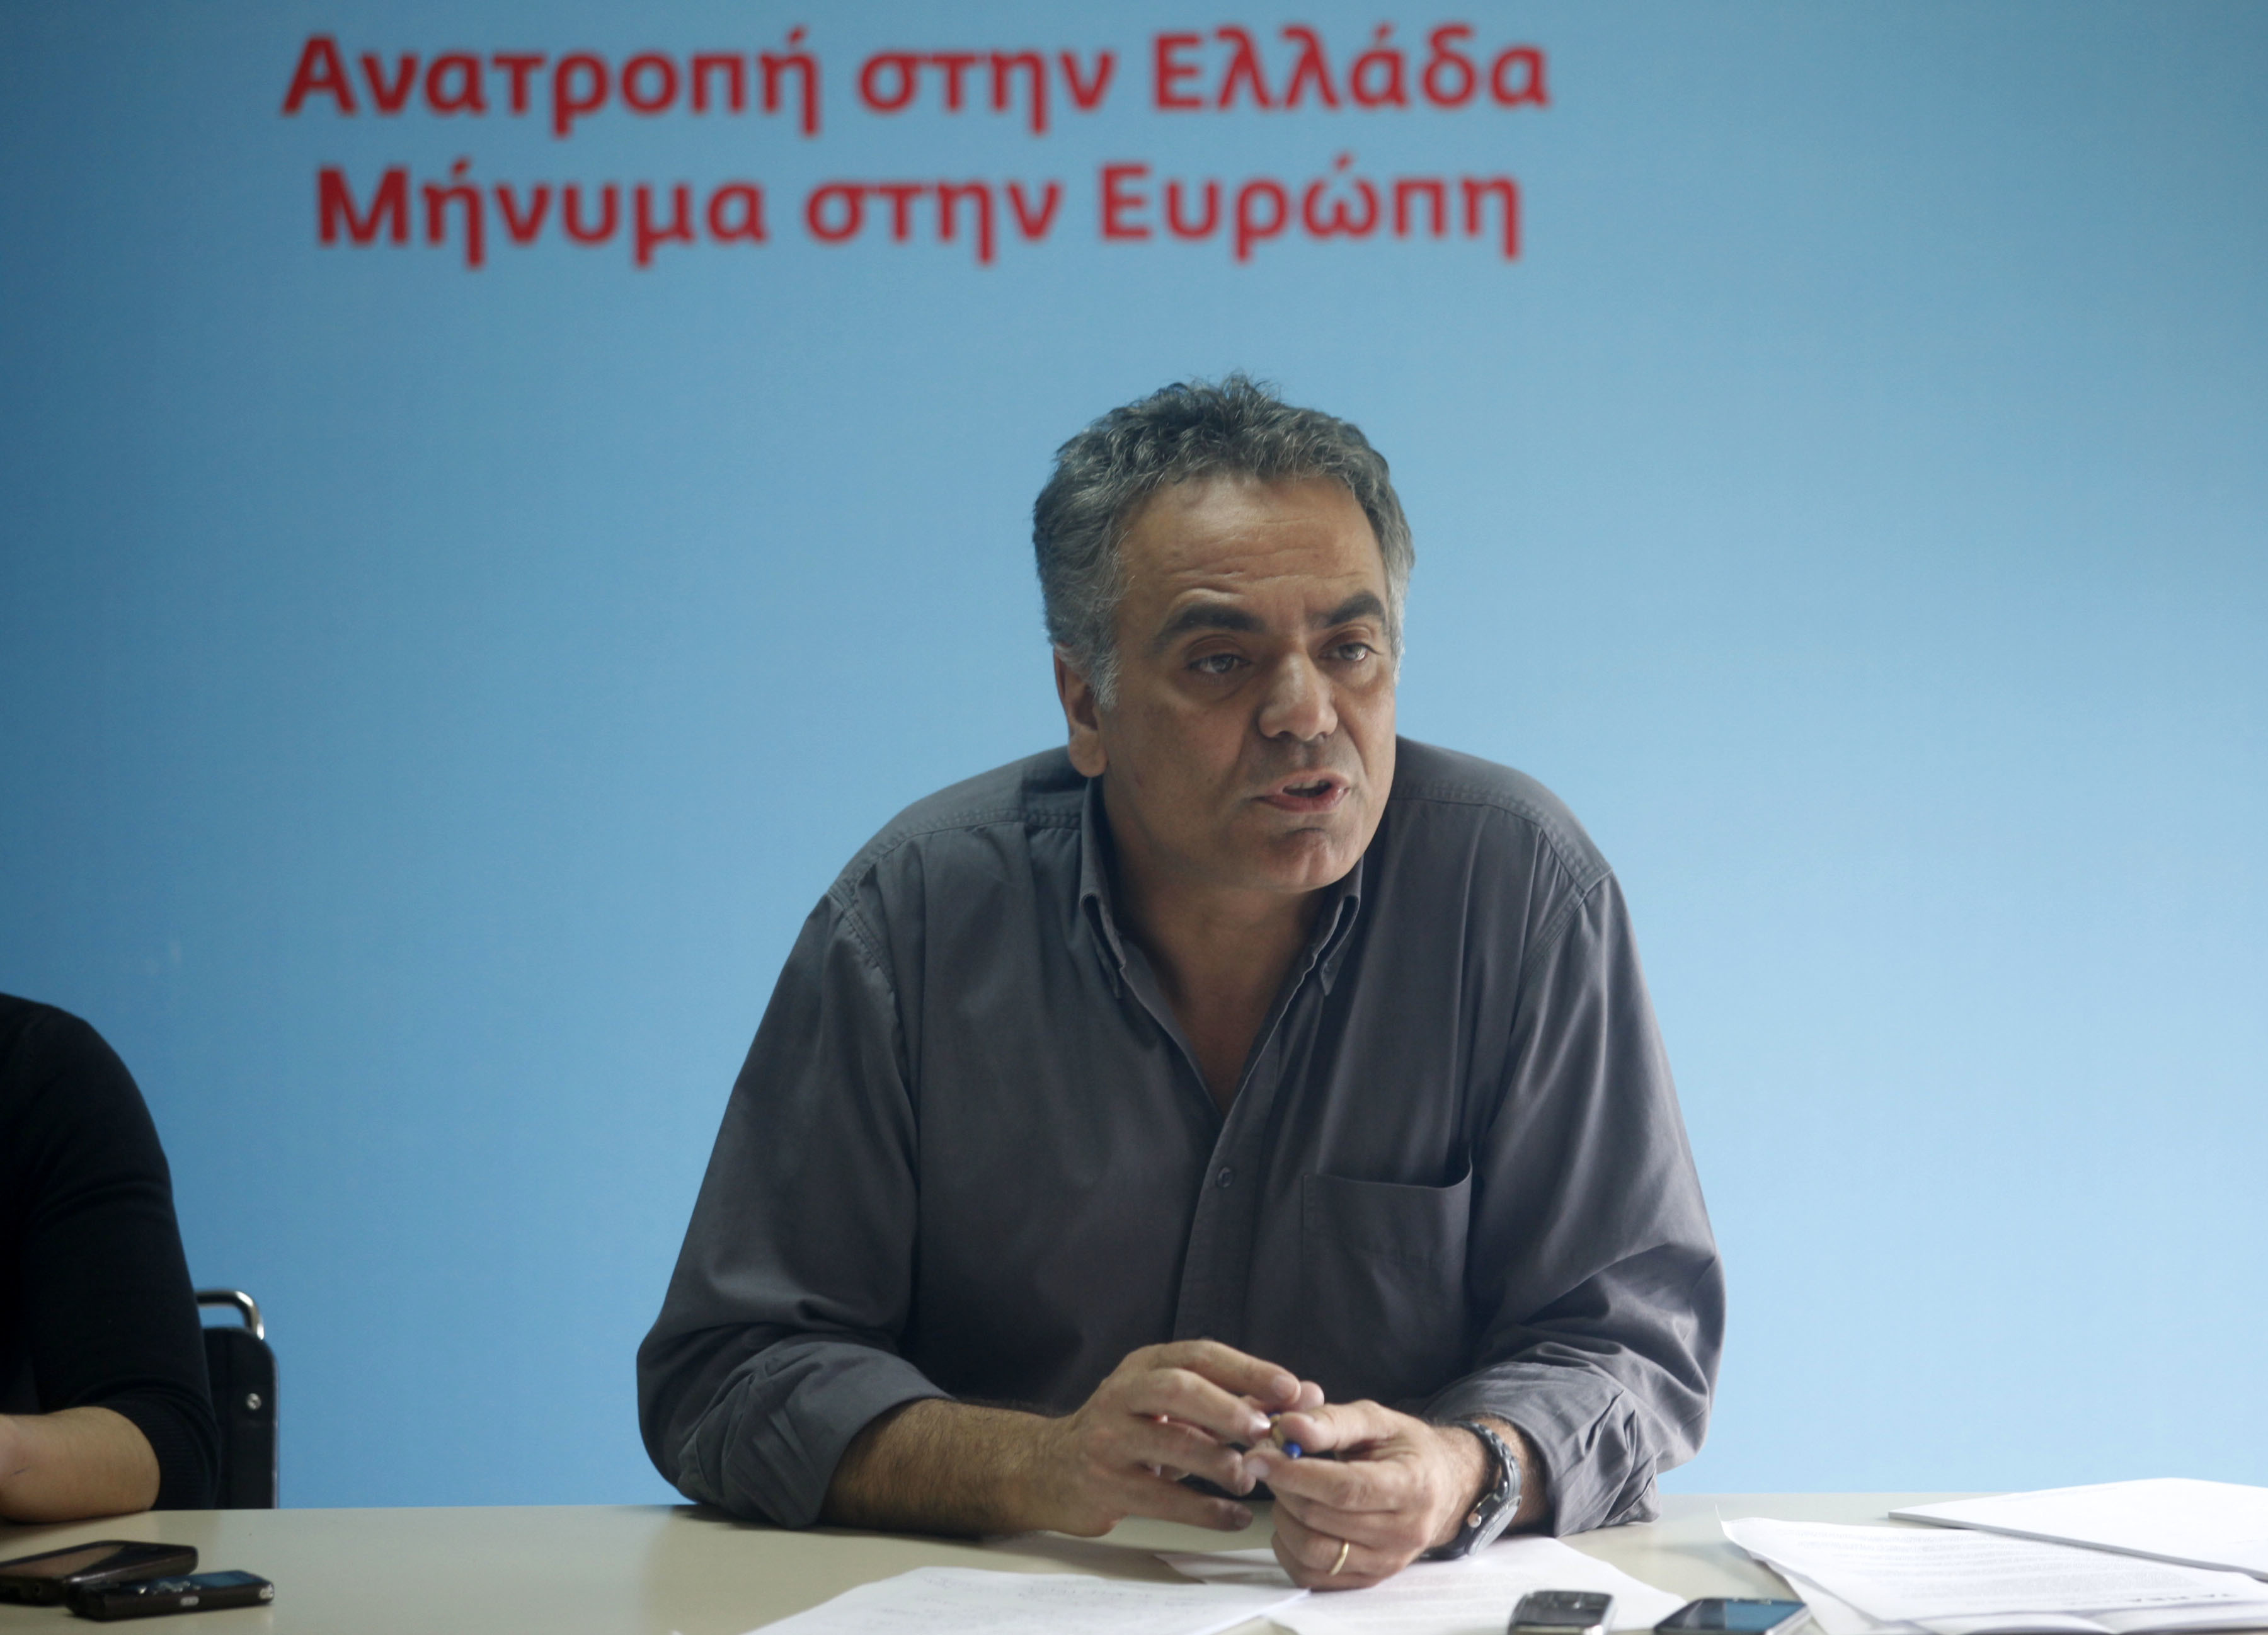 ΣΥΡΙΖΑ: “Θα στηρίξουμε τα σημεία που έχουμε κοινά με το ΚΚΕ στην πρόταση για το μνημόνιο”